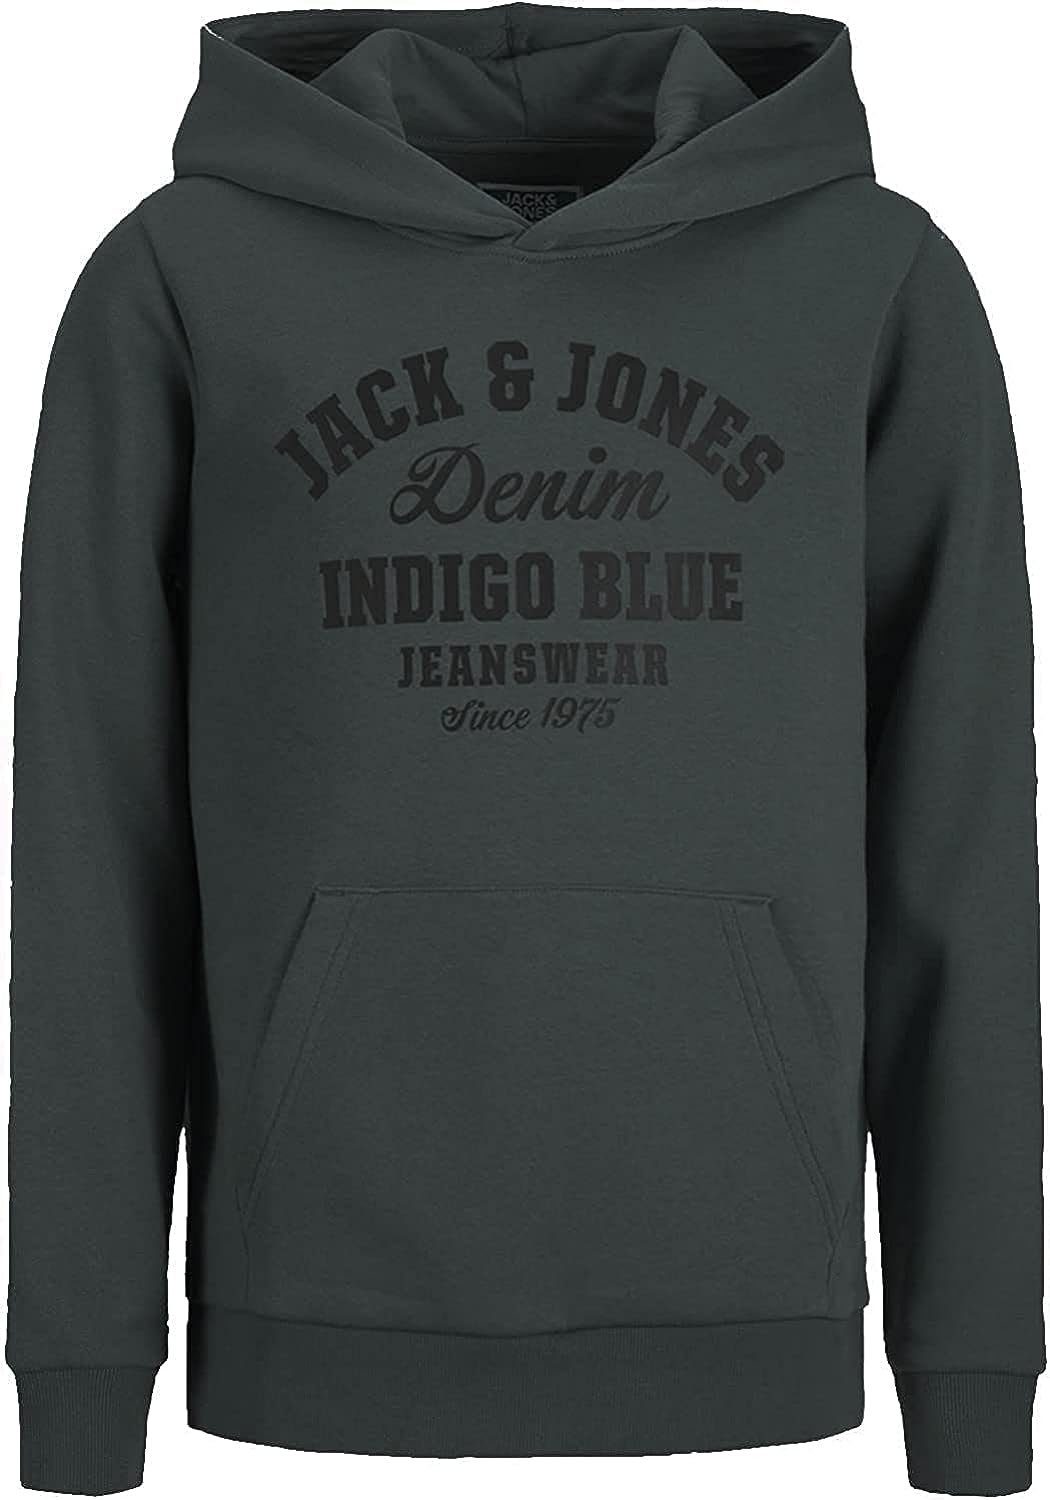 Kapuzensweatshirt Jack Hoodie Pack) im Kängurutasche 2 & Junior Jones Mix 3er (Spar mit Pack Set, 3er und Printdruck 3er